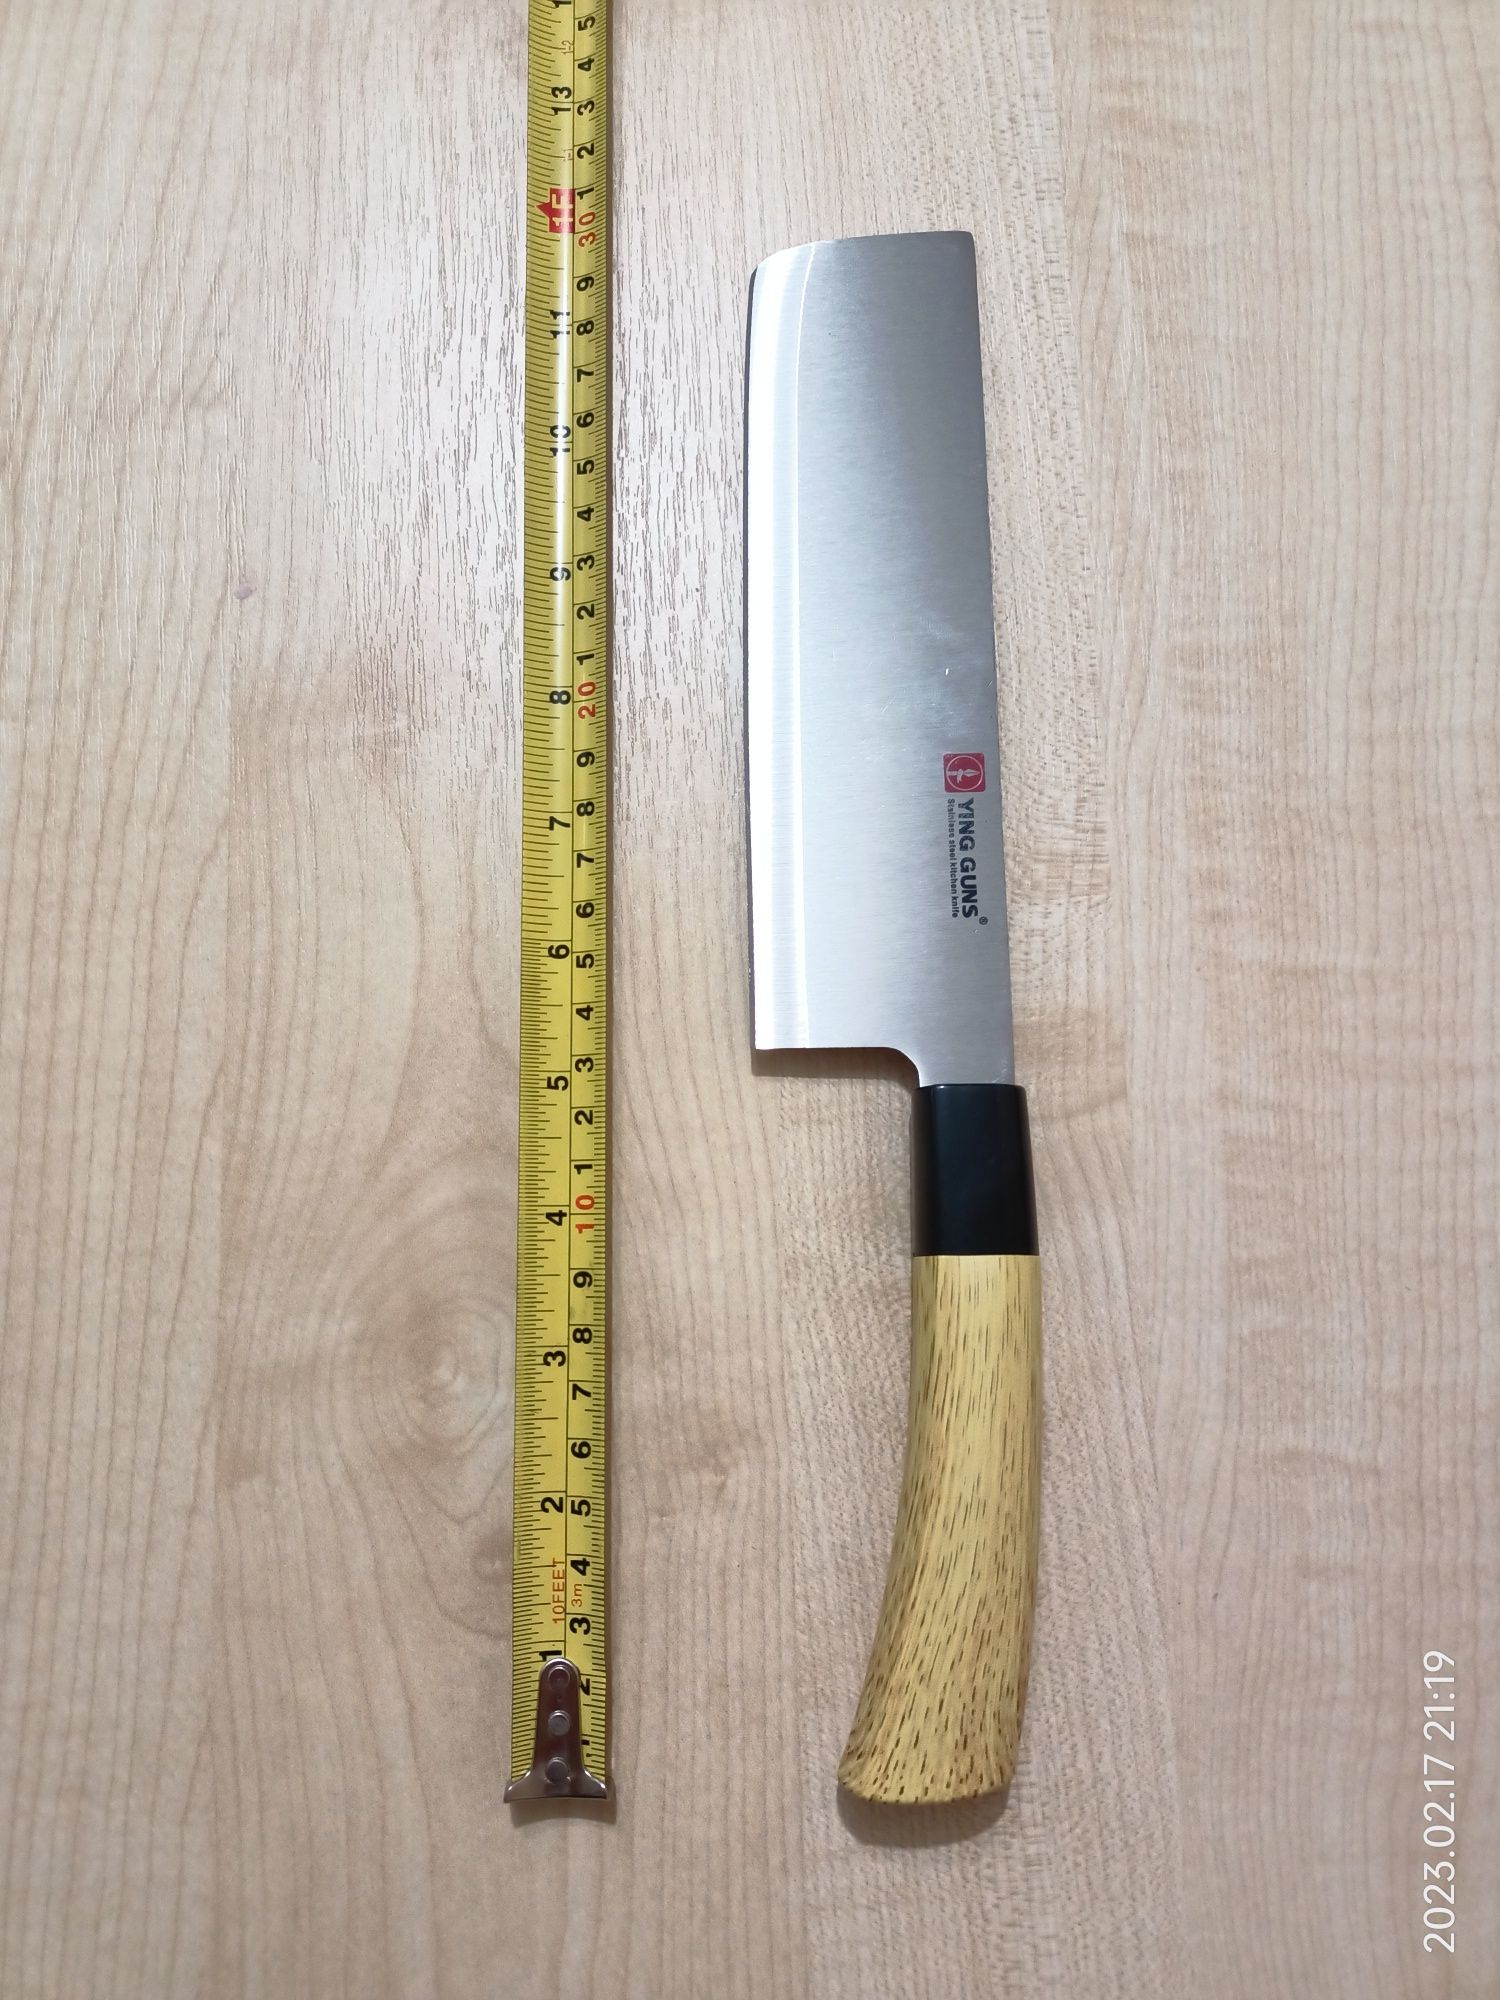 Кухонний топорик, японський шеф ніж, сокирка, сікач, тесак